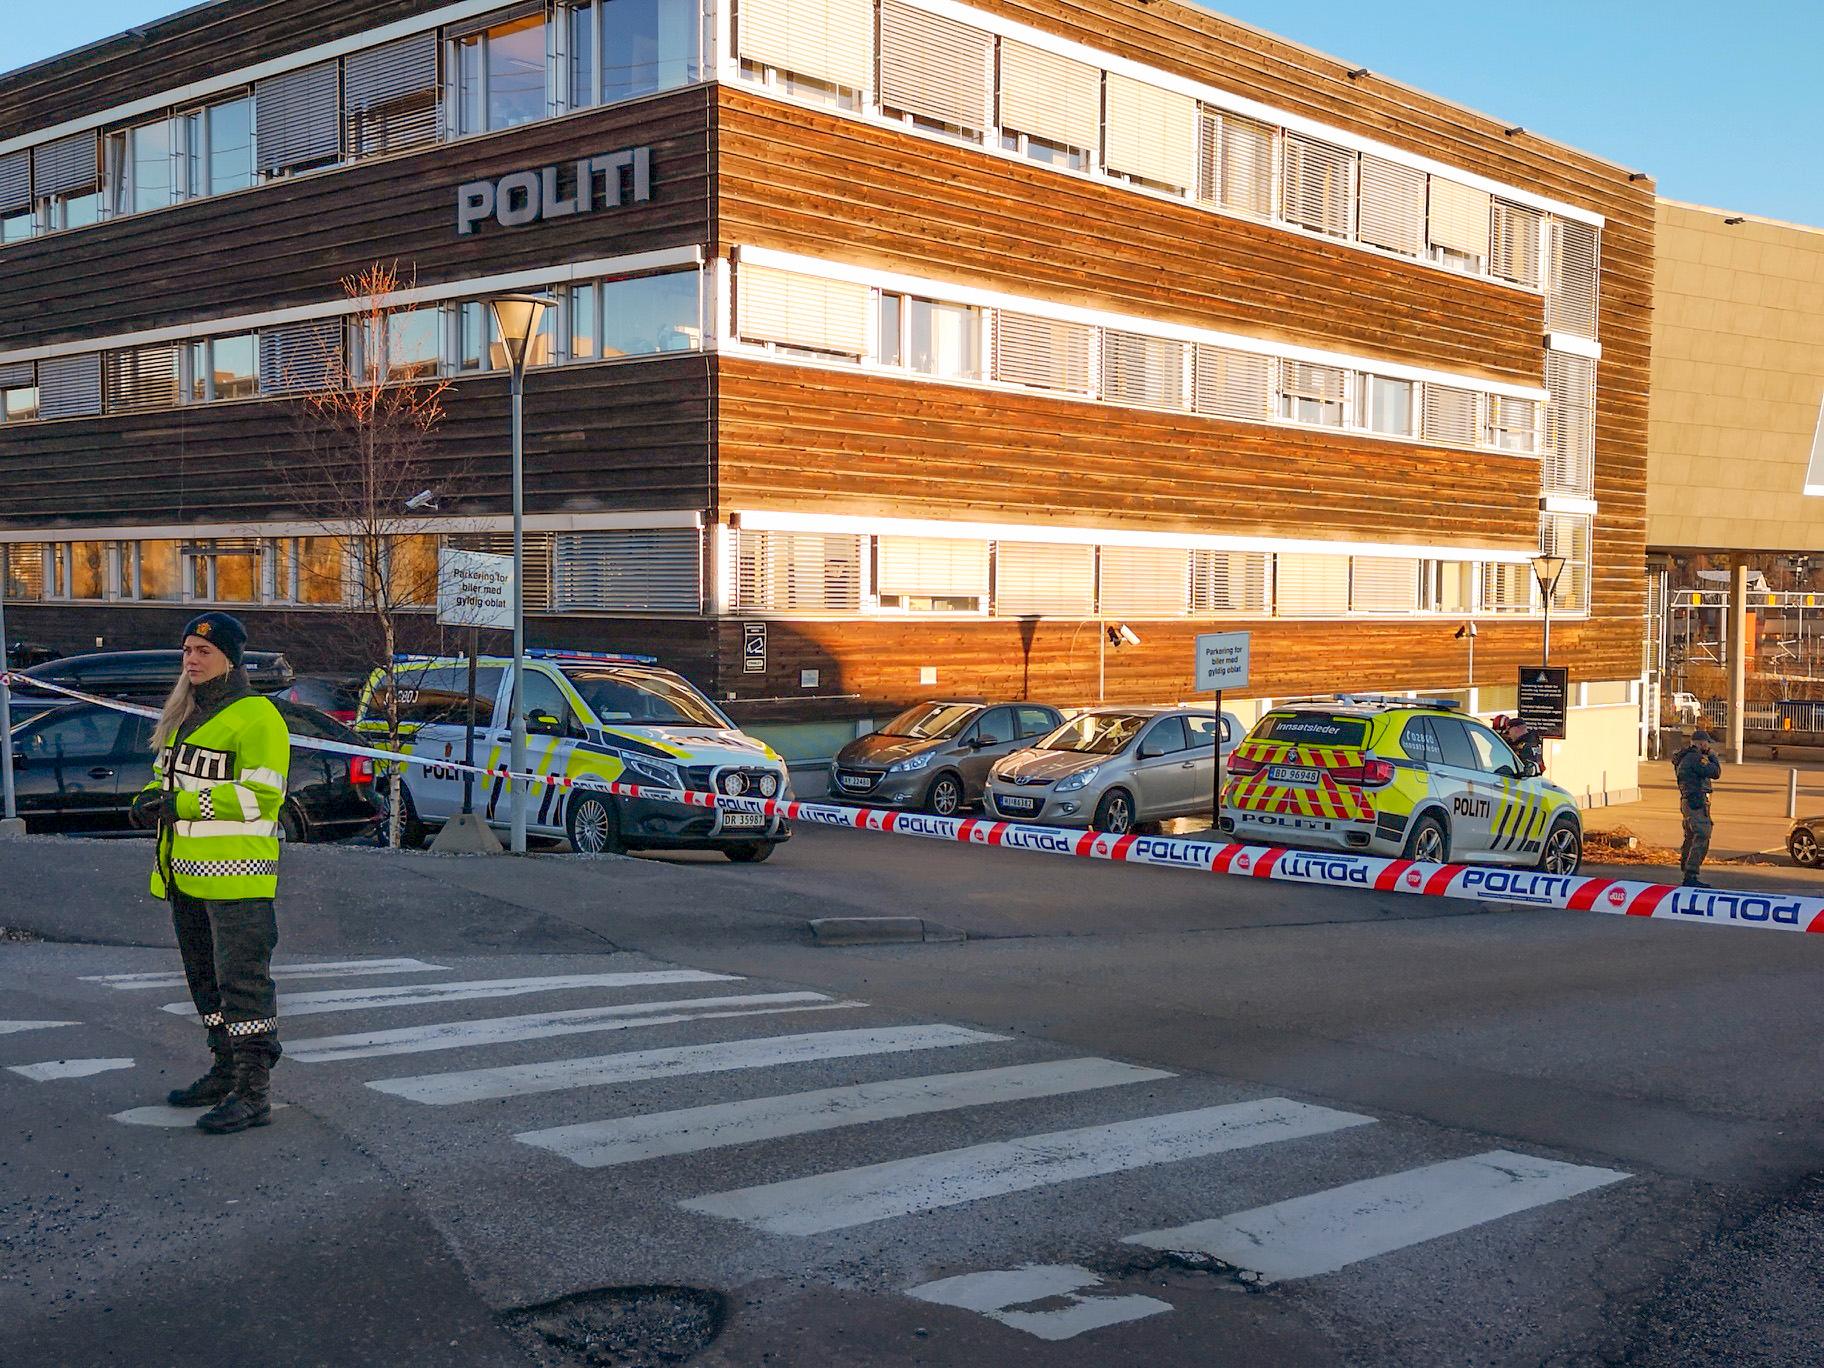 Det er funnet en uidentifisert gjenstand i politihuset i Ski i Akershus. Kundemottaket i politihuset er evakuert mens politiets bombegruppe undersøker gjenstanden. 